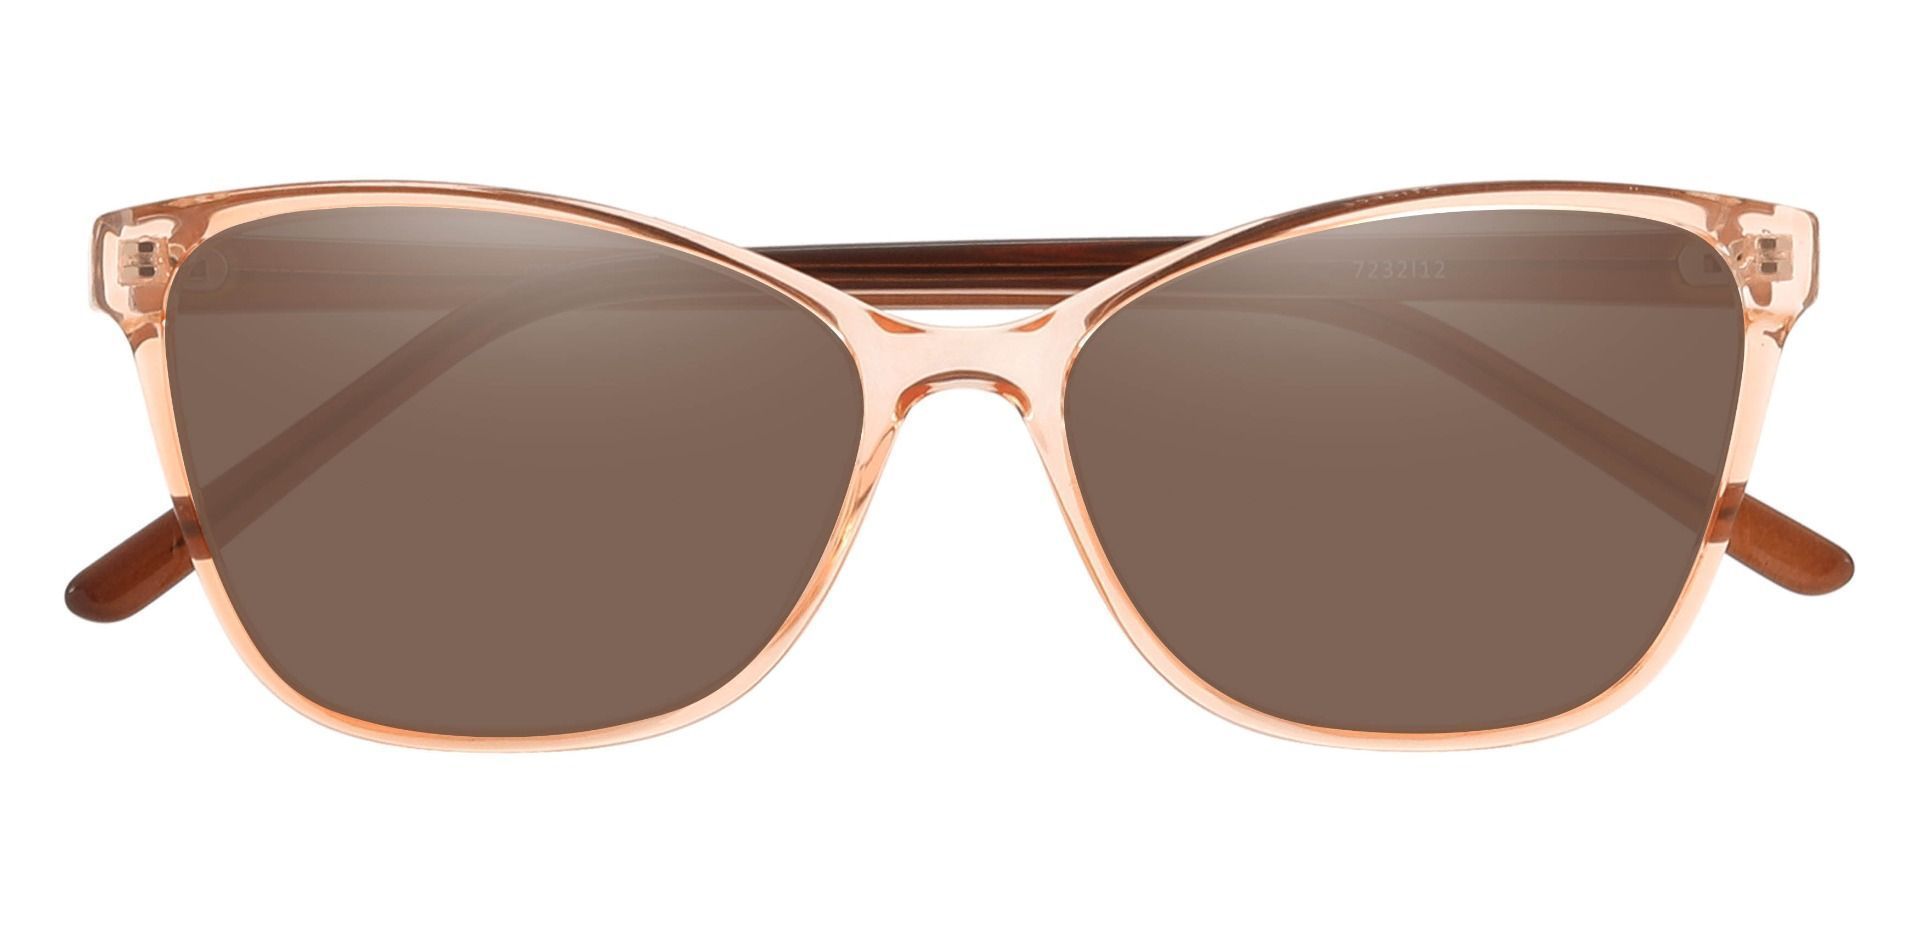 Giselle Cat Eye Prescription Sunglasses Pink Frame With Brown Lenses Women S Sunglasses